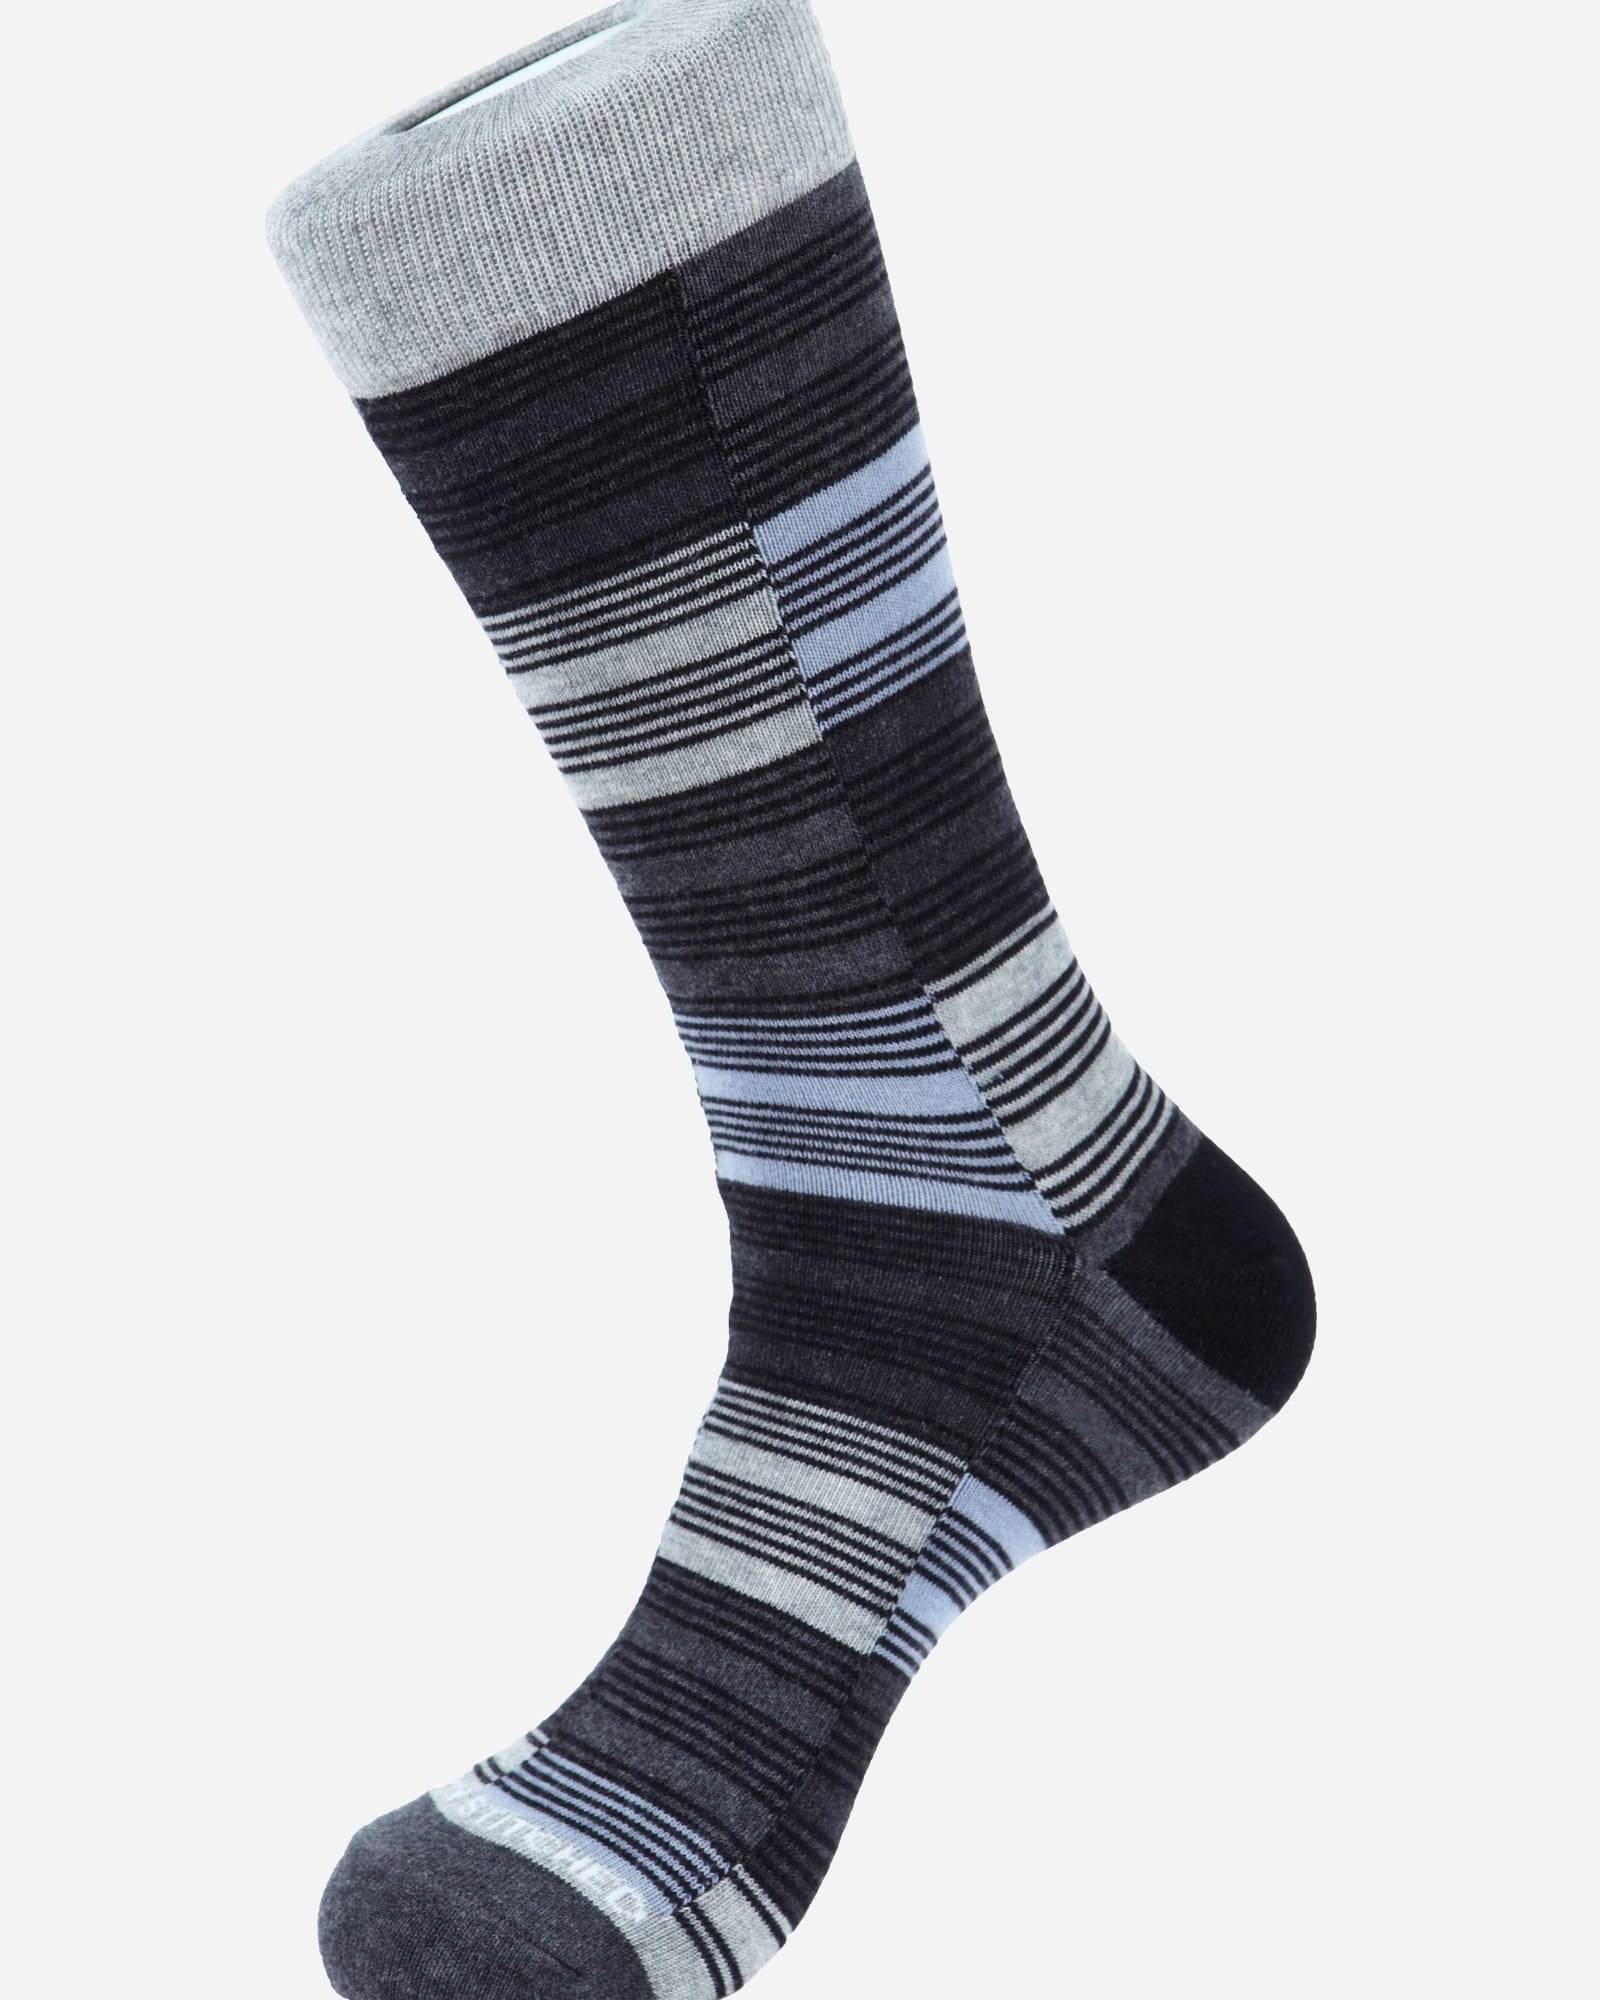 Checker Stripe Socks - Men's Socks at Menzclub